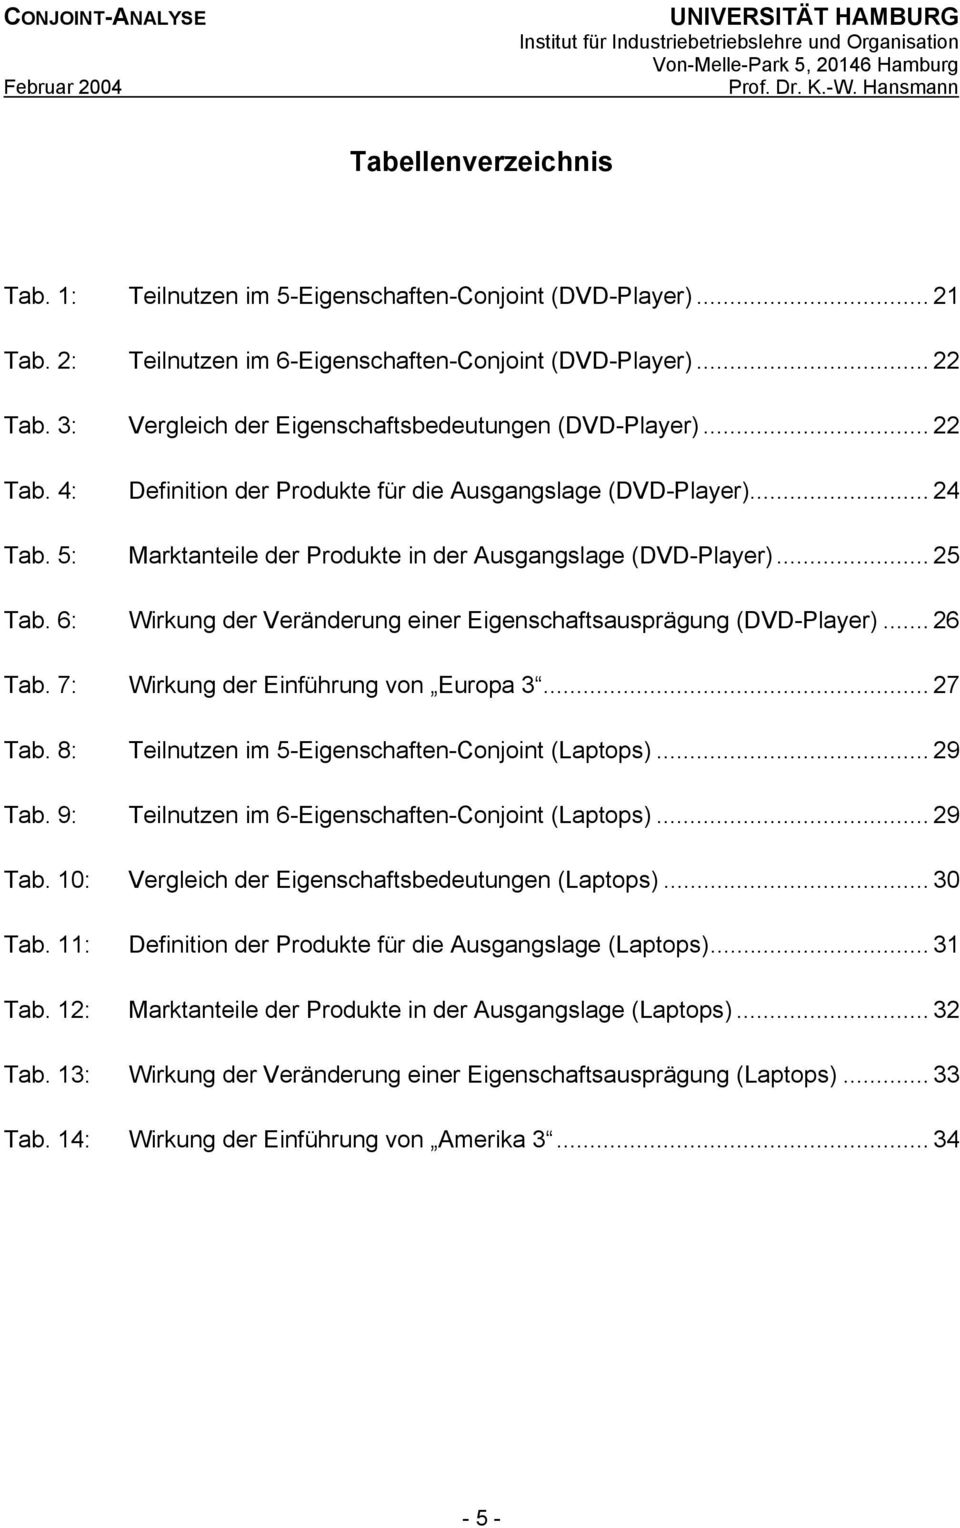 .. 25 Tab. 6: Wirkung der Veränderung einer Eigenschaftsausprägung (DVD-Player)... 26 Tab. 7: Wirkung der Einführung von Europa 3... 27 Tab. 8: Teilnutzen im 5-Eigenschaften-Conjoint (Laptops).